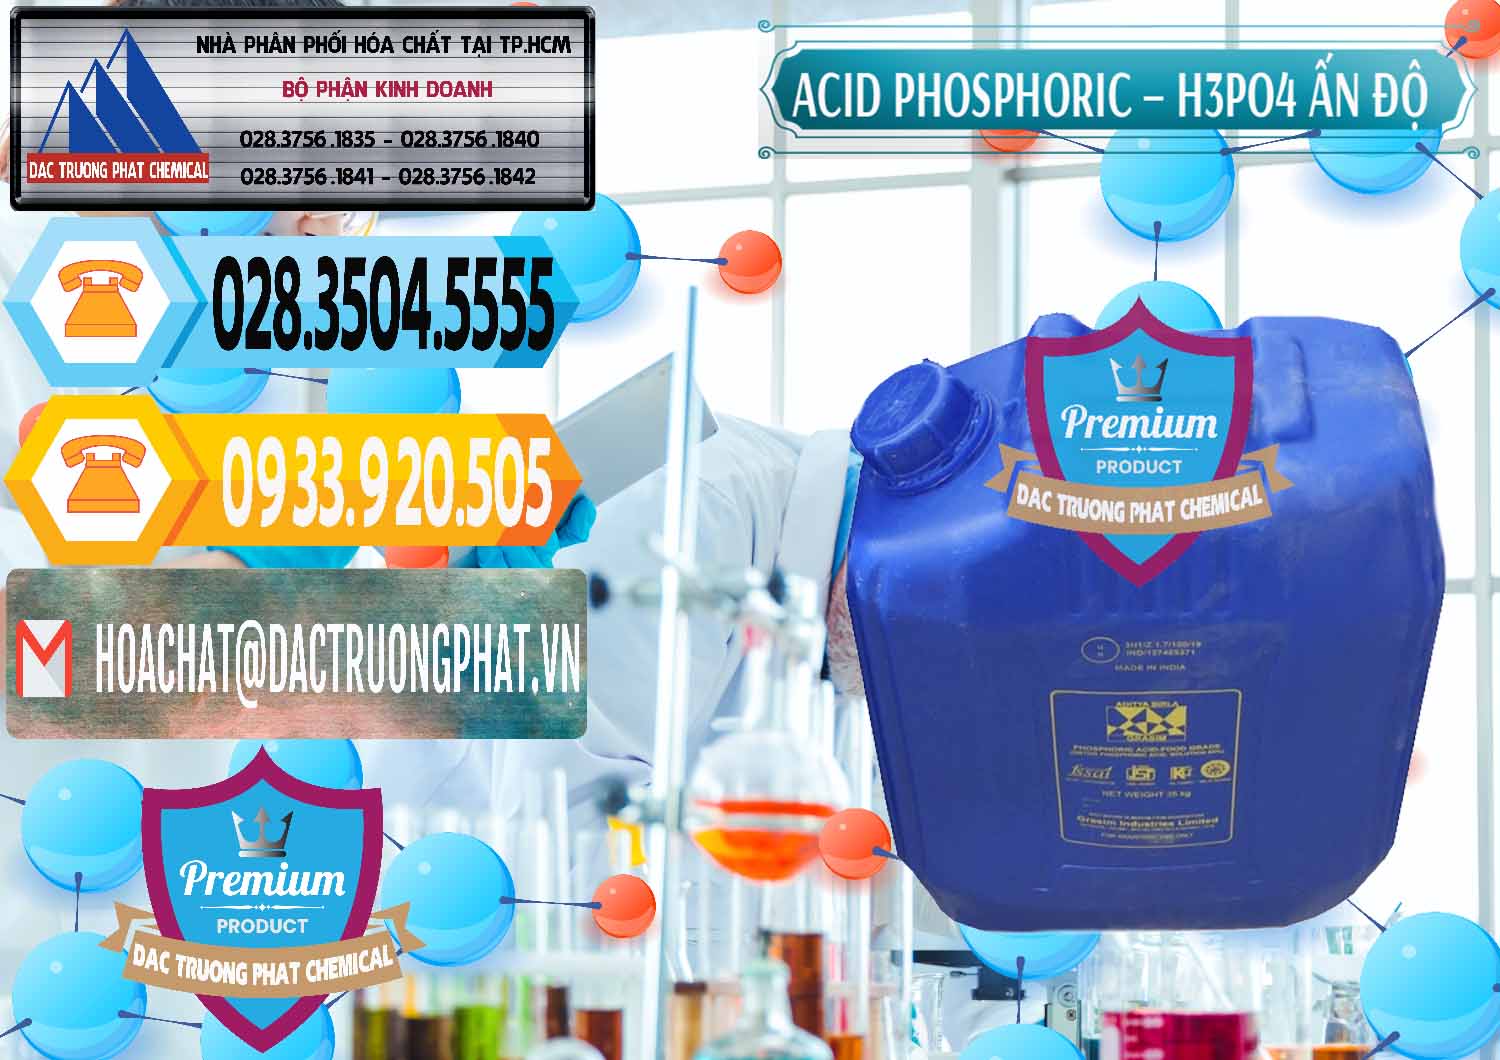 Chuyên cung cấp và bán Axit Phosphoric H3PO4 85% Ấn Độ - 0350 - Cty chuyên nhập khẩu và cung cấp hóa chất tại TP.HCM - hoachattayrua.net